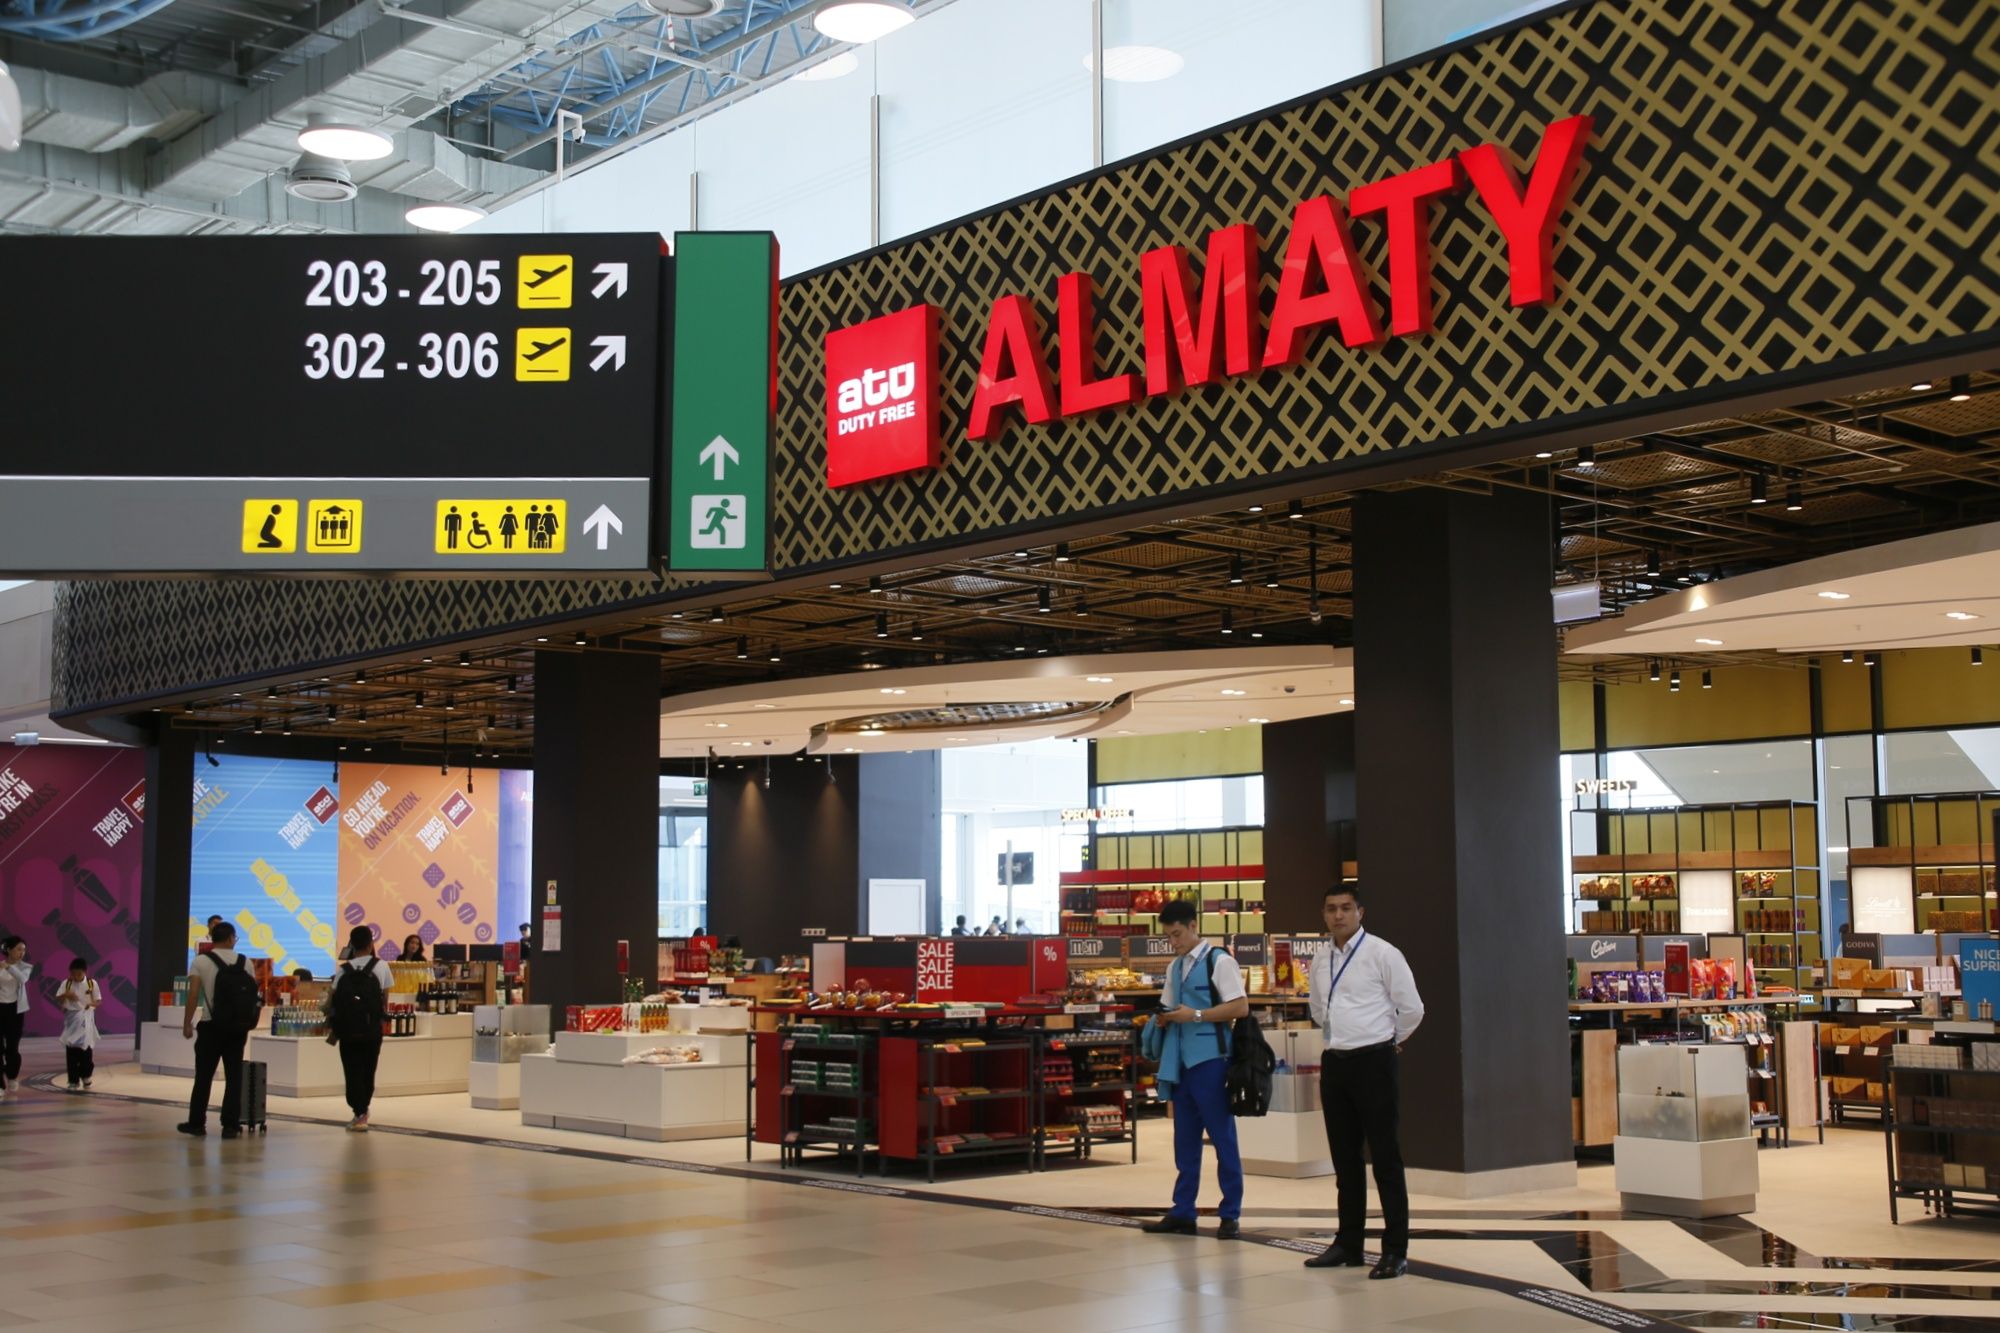 В новом терминале аэропорта Алматы 23% пассажиров использовали e-gate 3114917 — Kapital.kz 